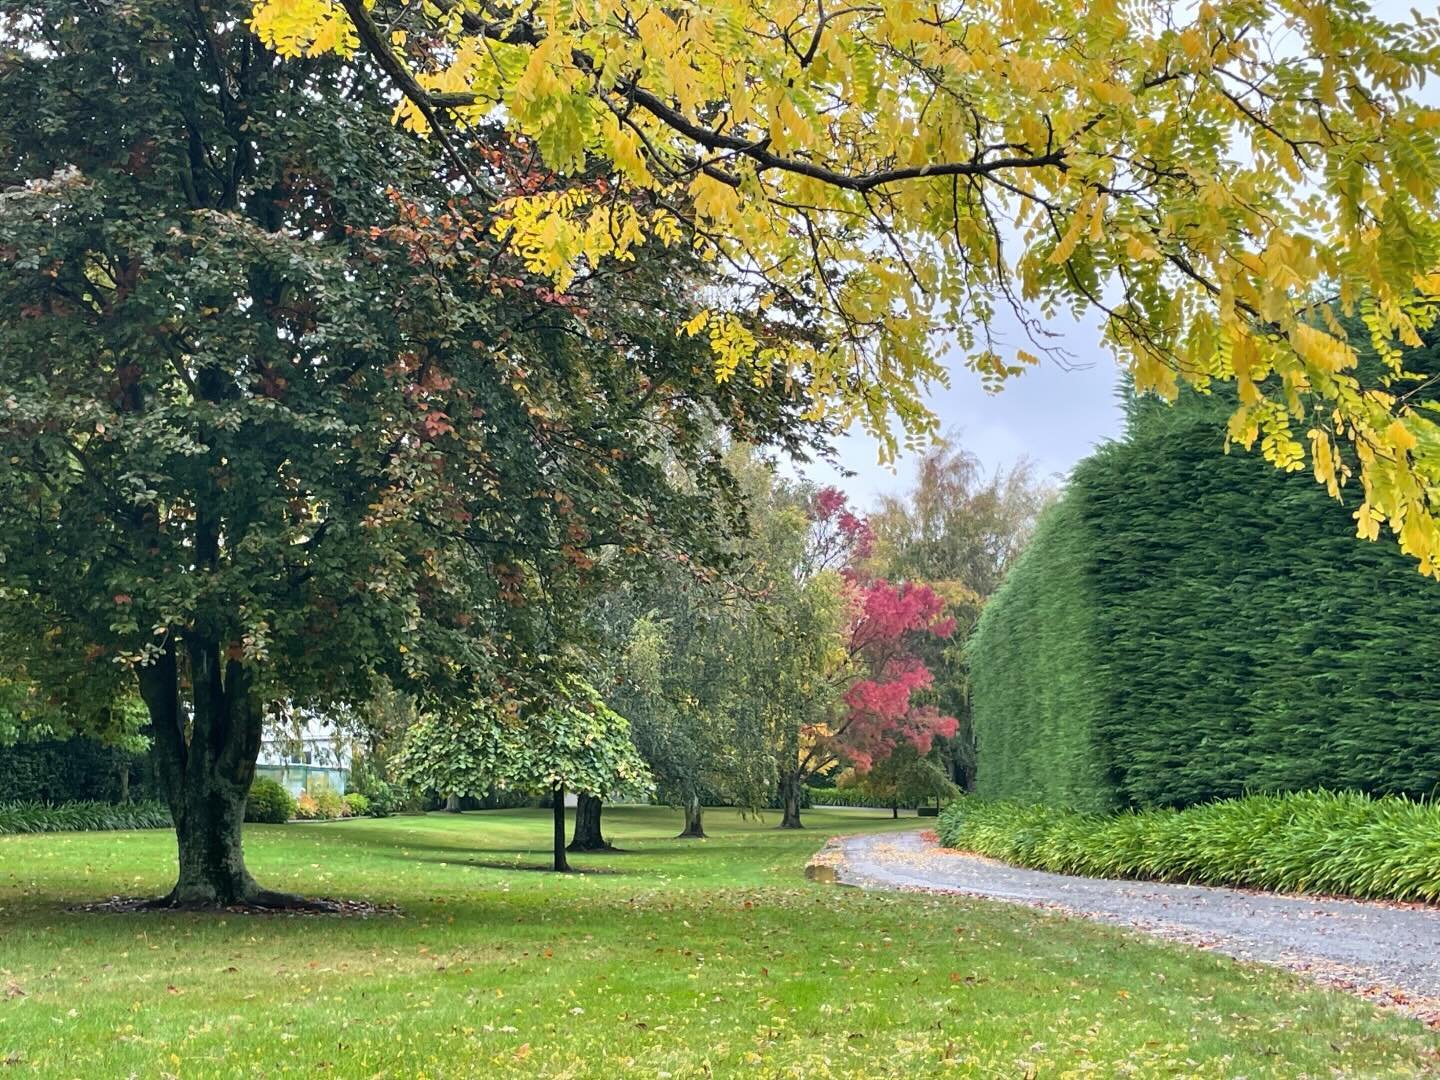 Woodend Garden in #blenheim #marlborough - wearing its autumn cloak so elegantly.  #opentovisit #nzgardenstrust #special #visitagarden #nzgardens